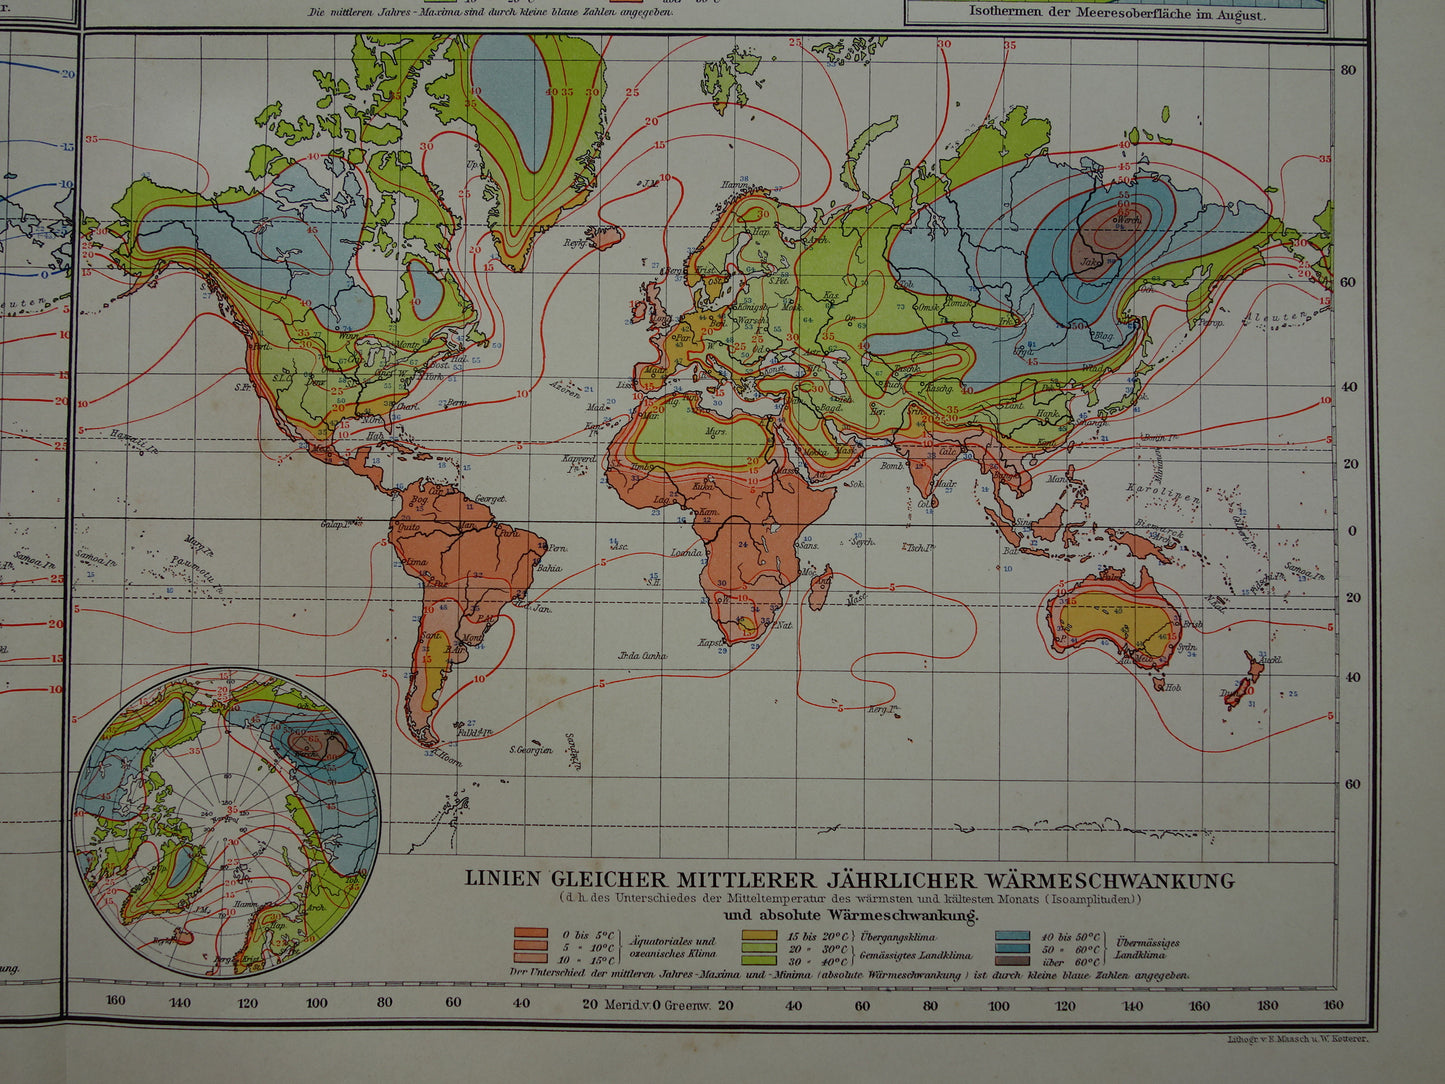 Oude wereldkaart over klimaat en temperatuur 1910 originele antieke historische kaart landkaart klimaatkaart isothermen